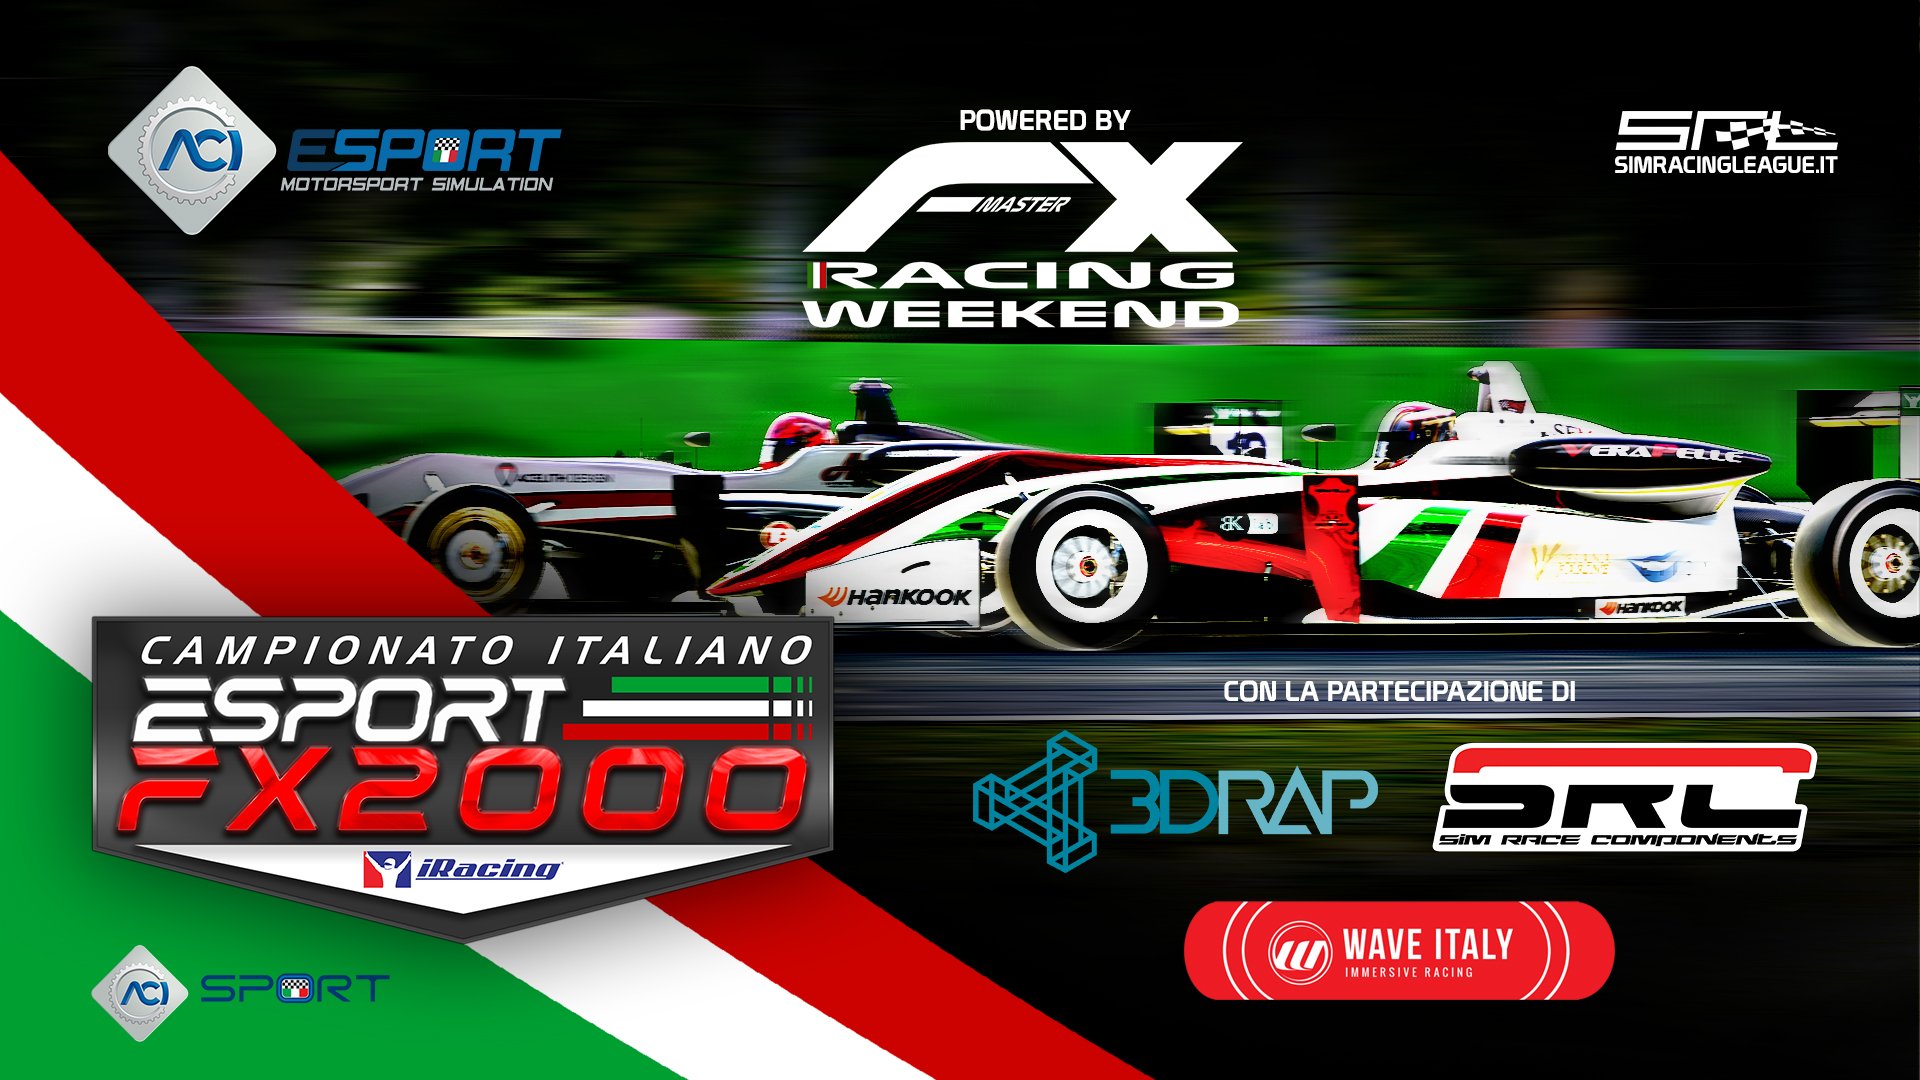 More information about "ACI ESport Campionato Italiano FX2000 [28 e 30 settembre ore 21,20]"